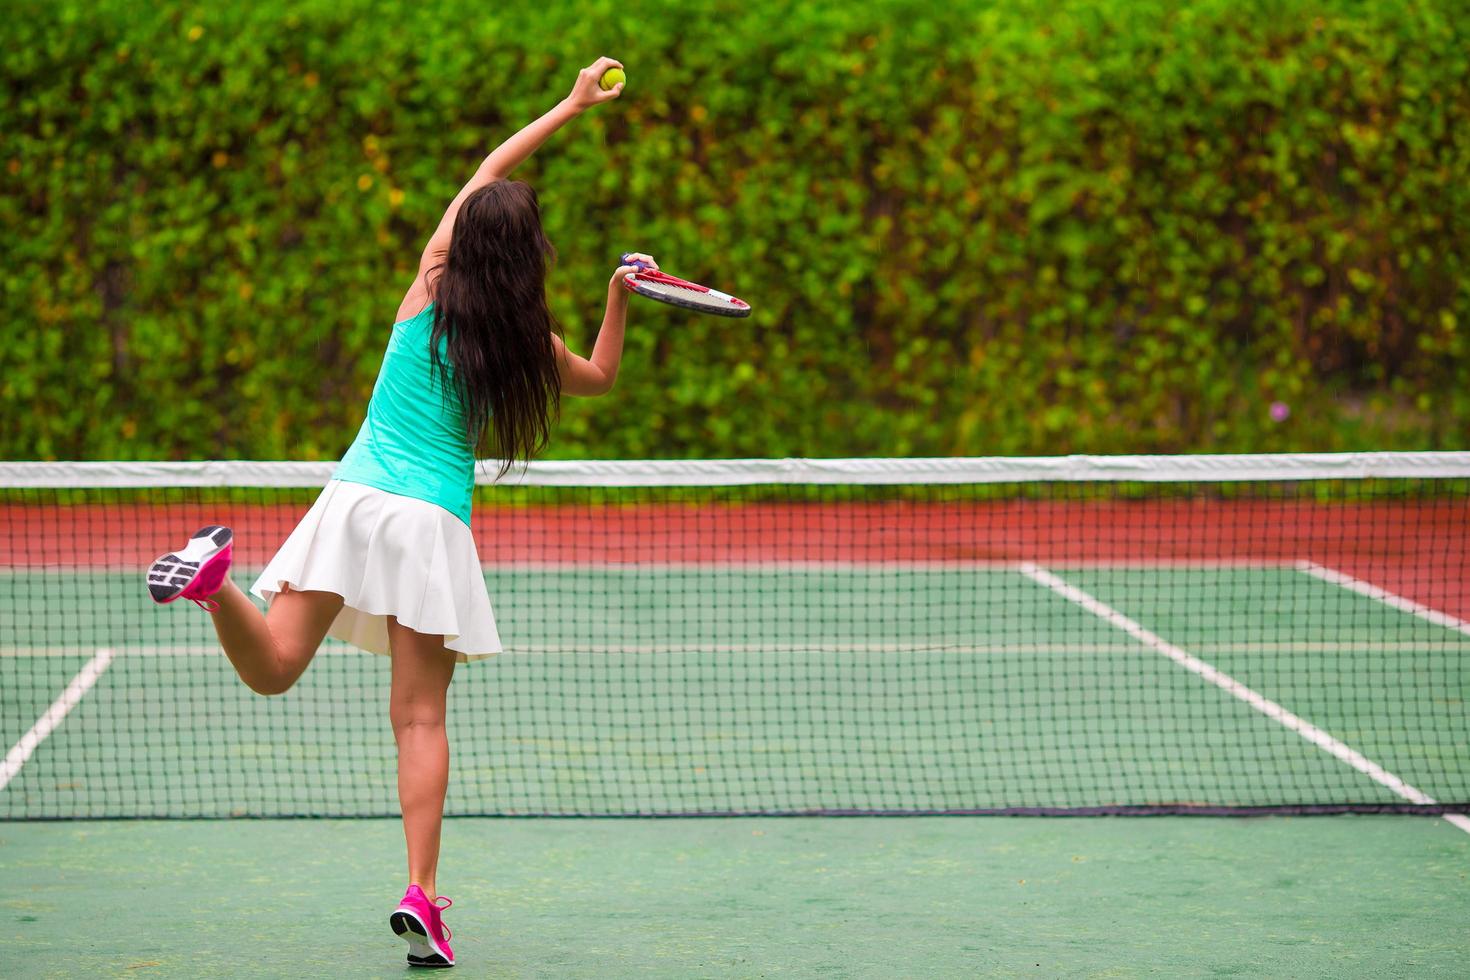 Frau spielt Tennis foto